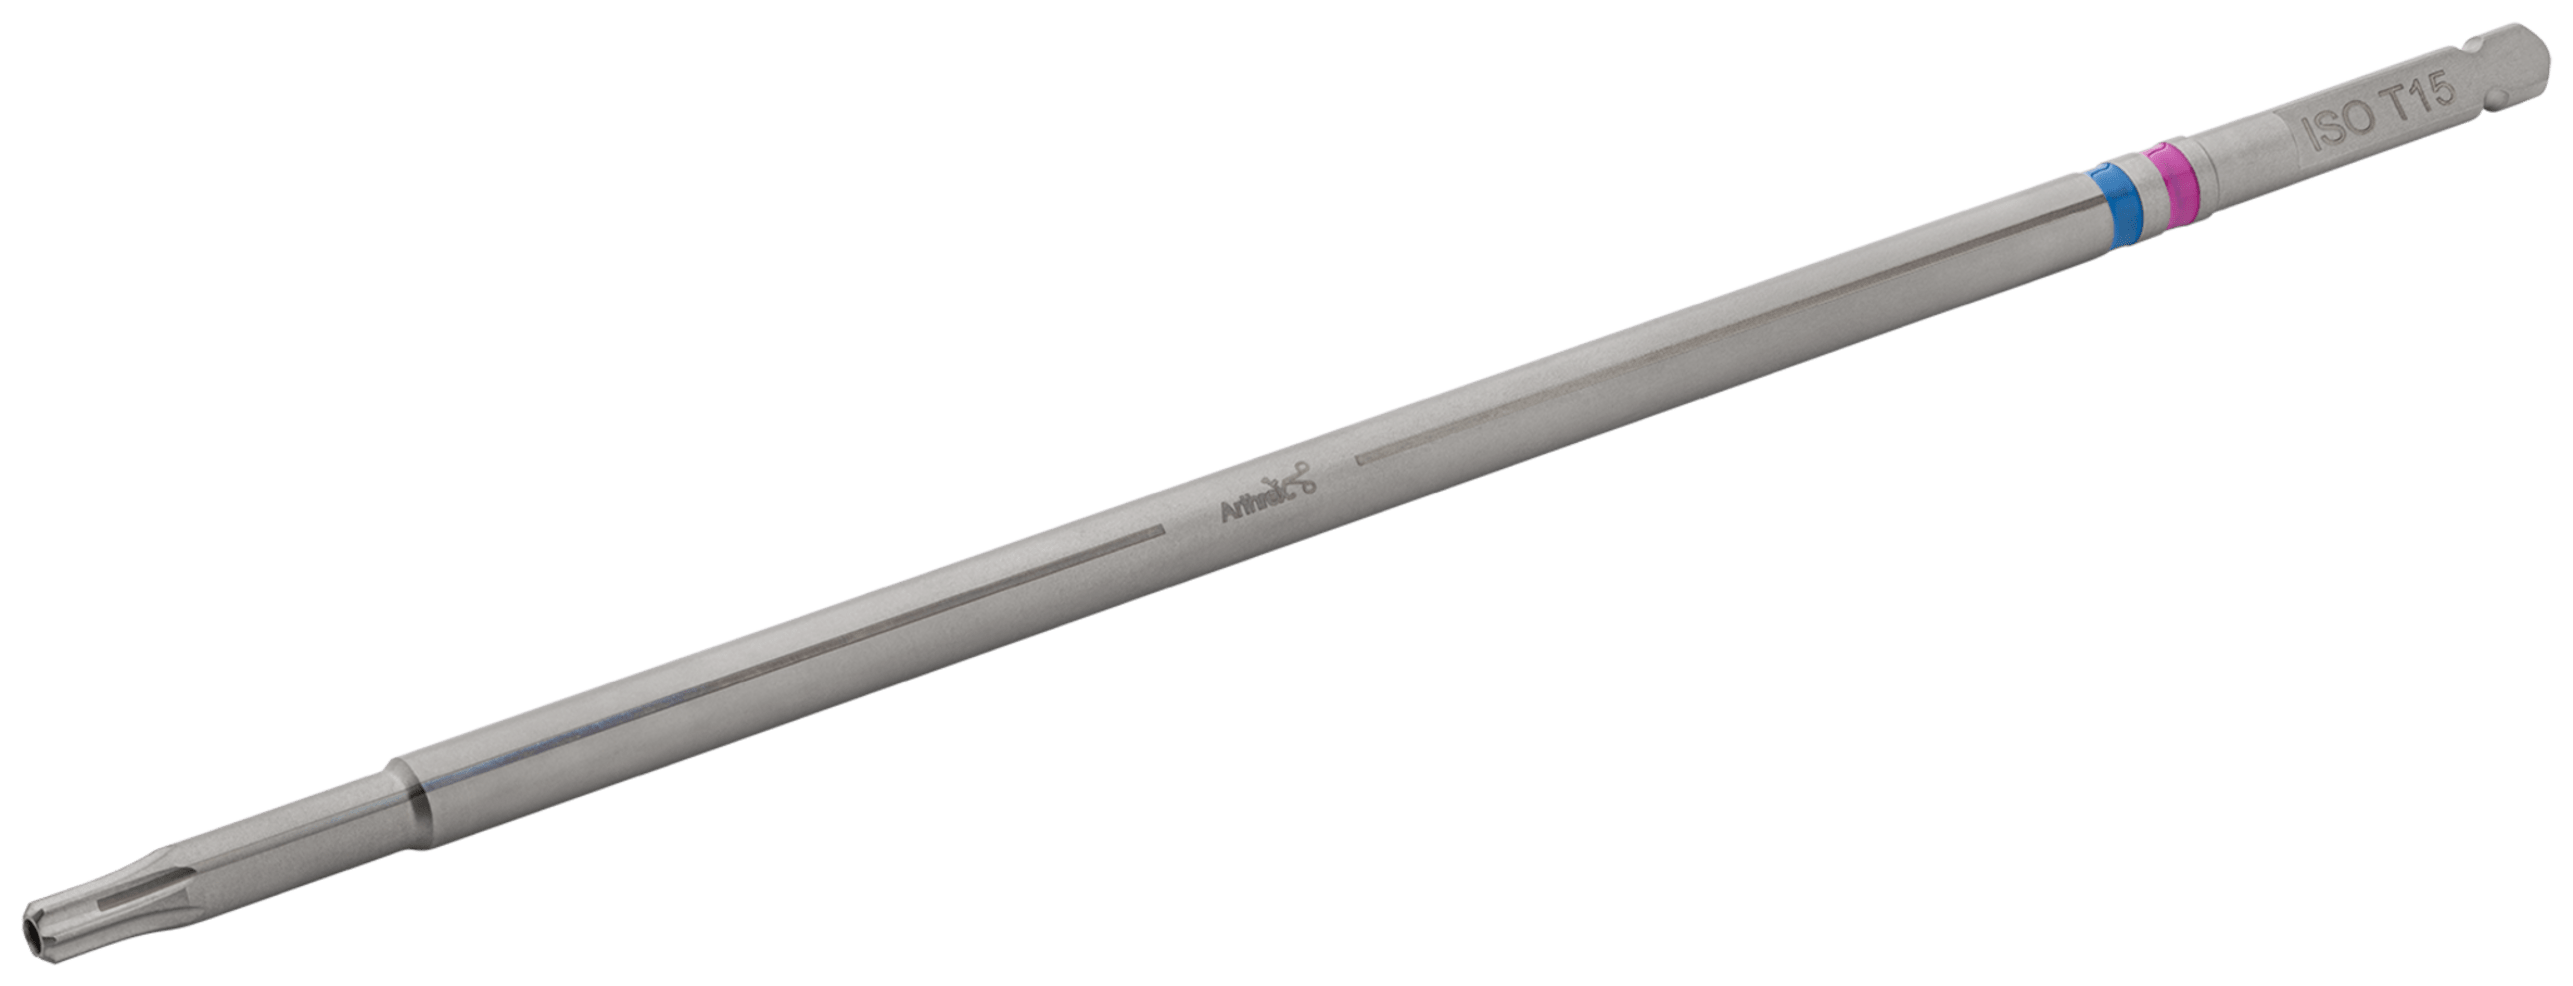 Schraubendreheraufsatz, für 4 mm minimal-invasive FT-Schrauben, kanüliert, T15 Hexalobe